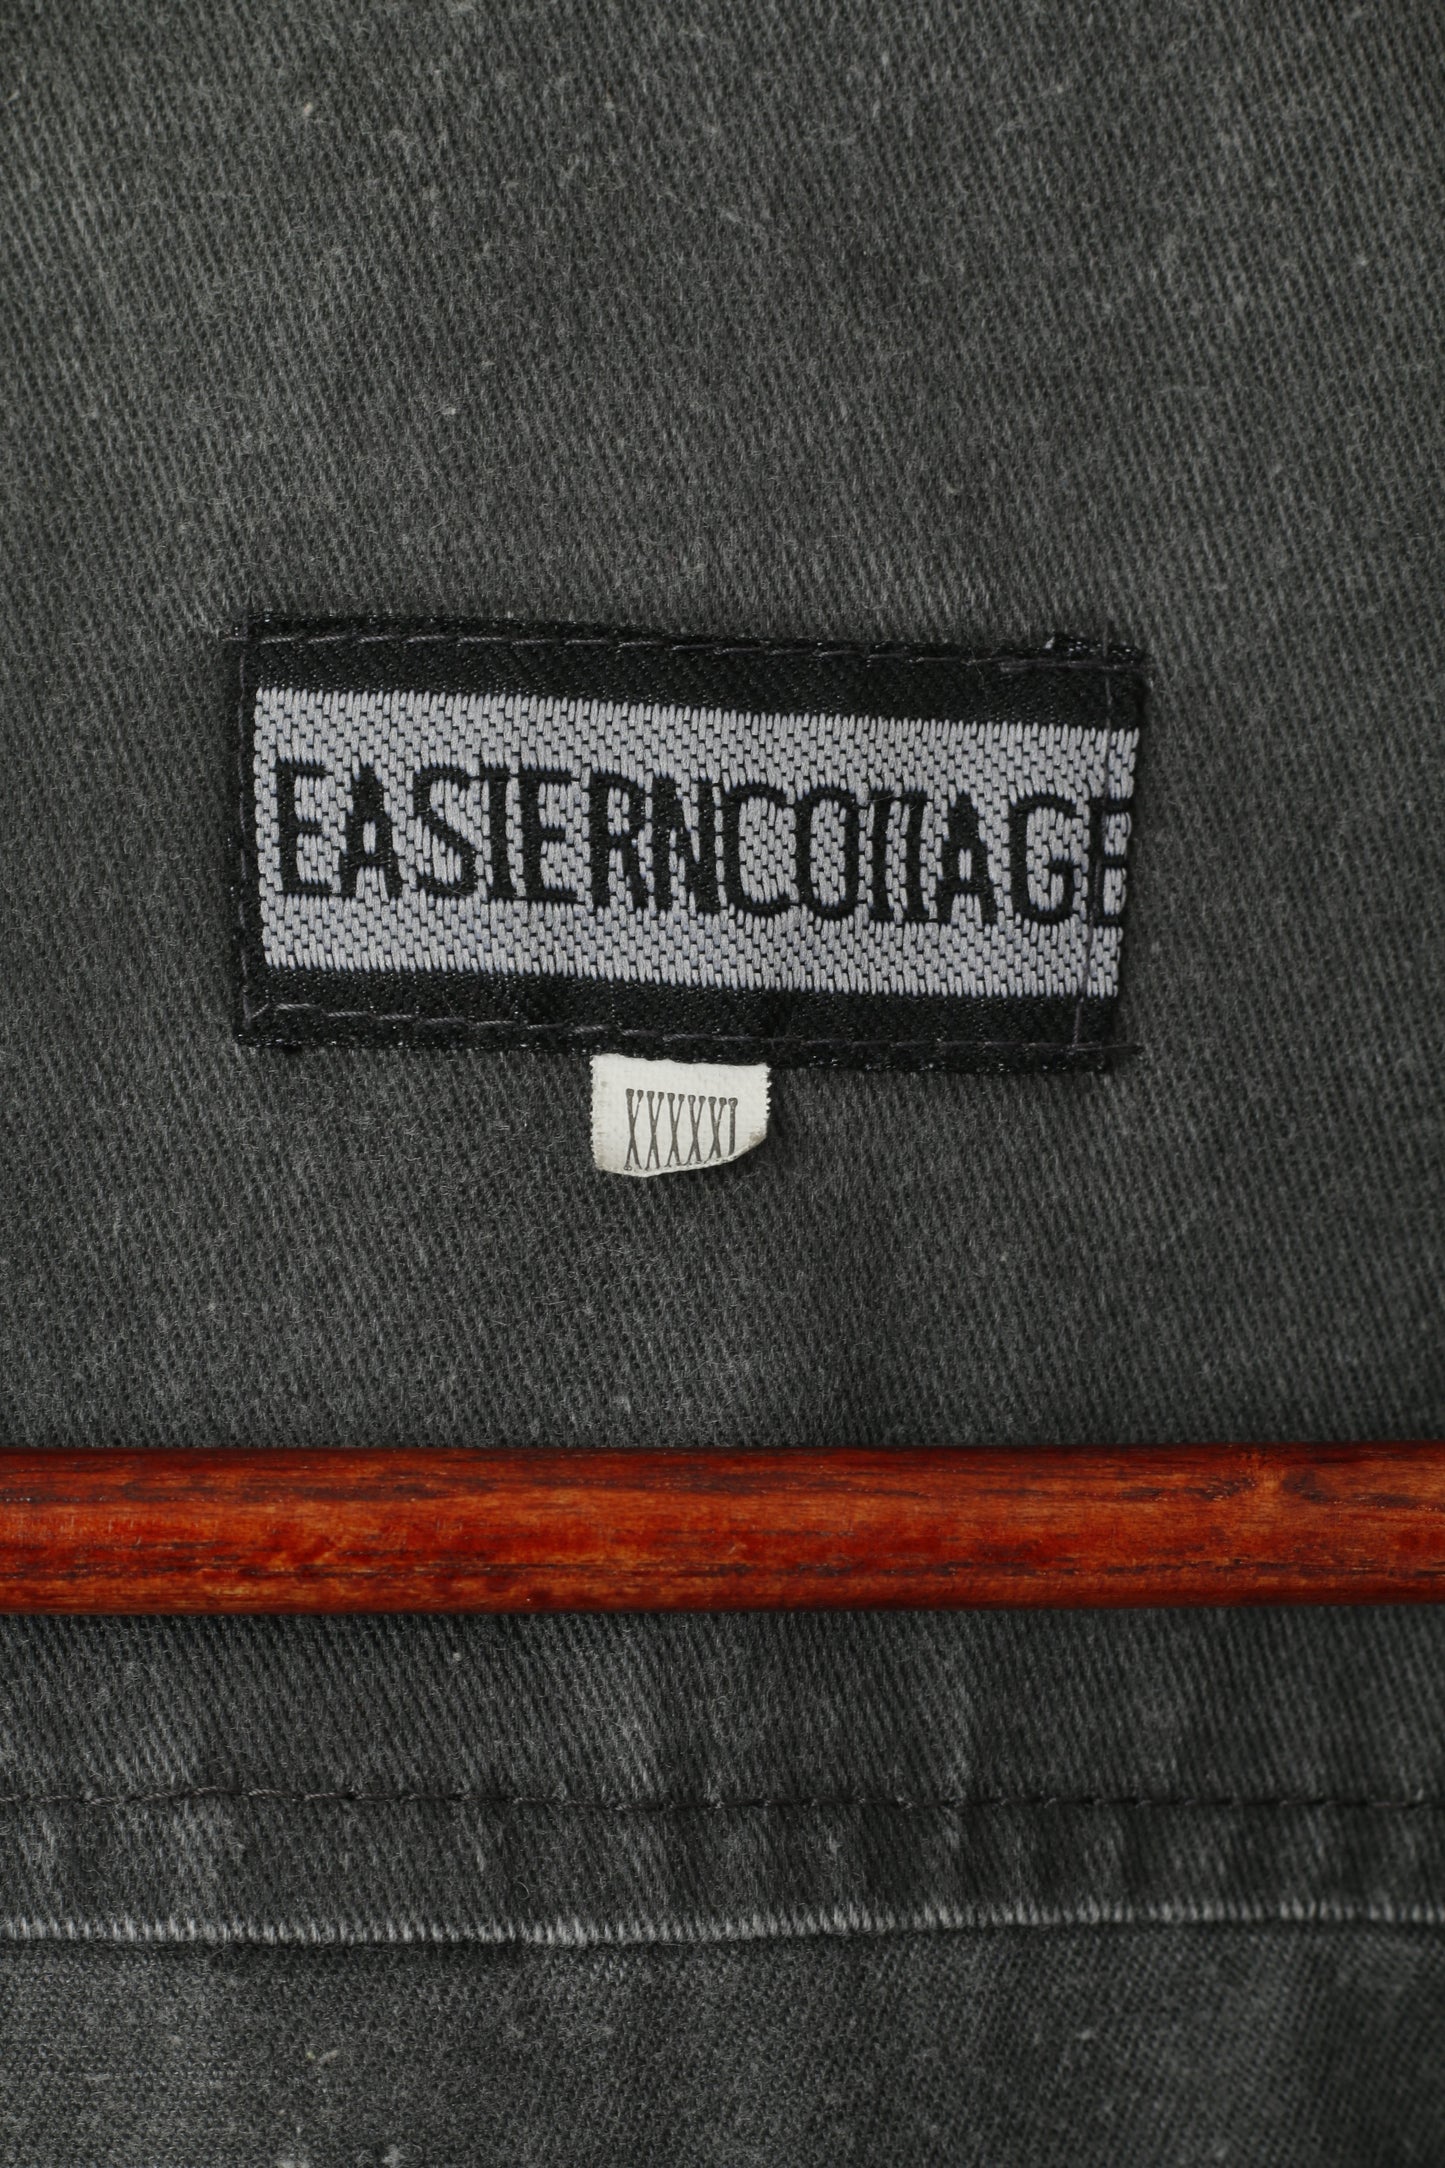 Easiern Collage Men XXXXL (XXL) Gilet Grigio Pesca Multi Tasche Estern Cottage Vest